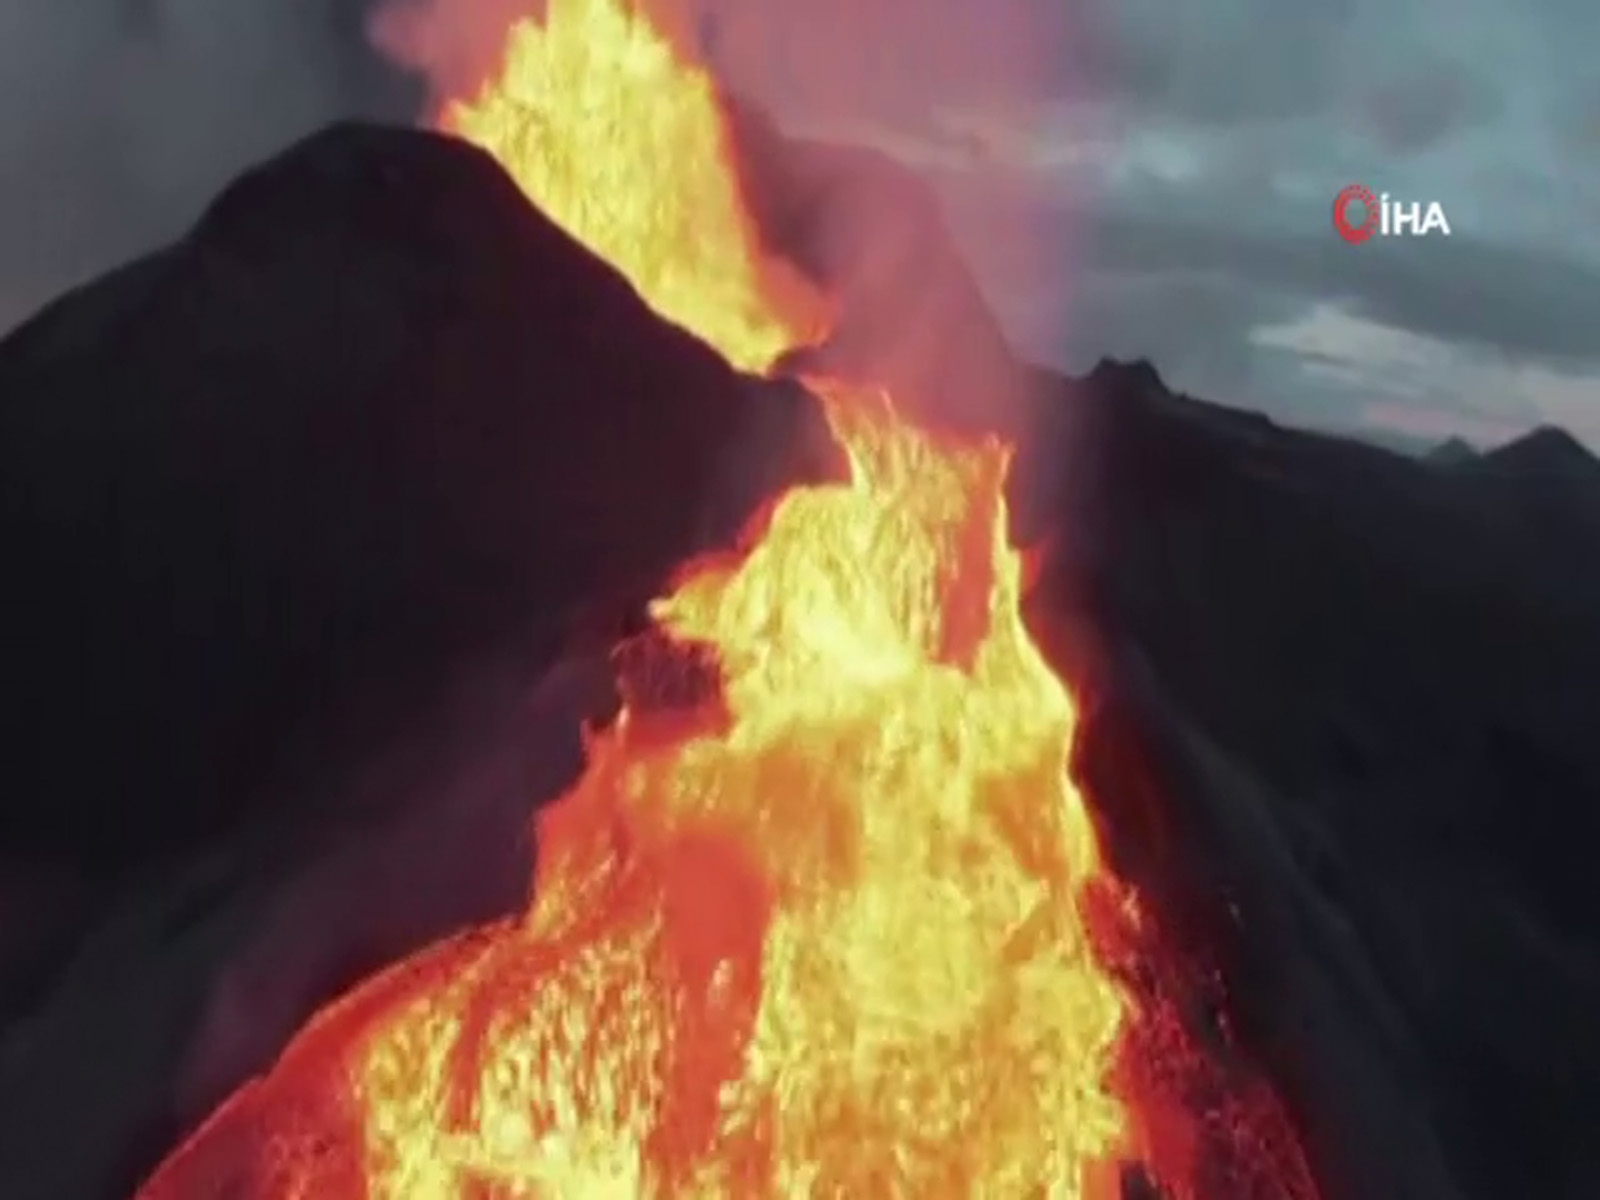 İzlanda’da patlayan yanardağı görüntüleyen İHA lavların içinde kayboldu